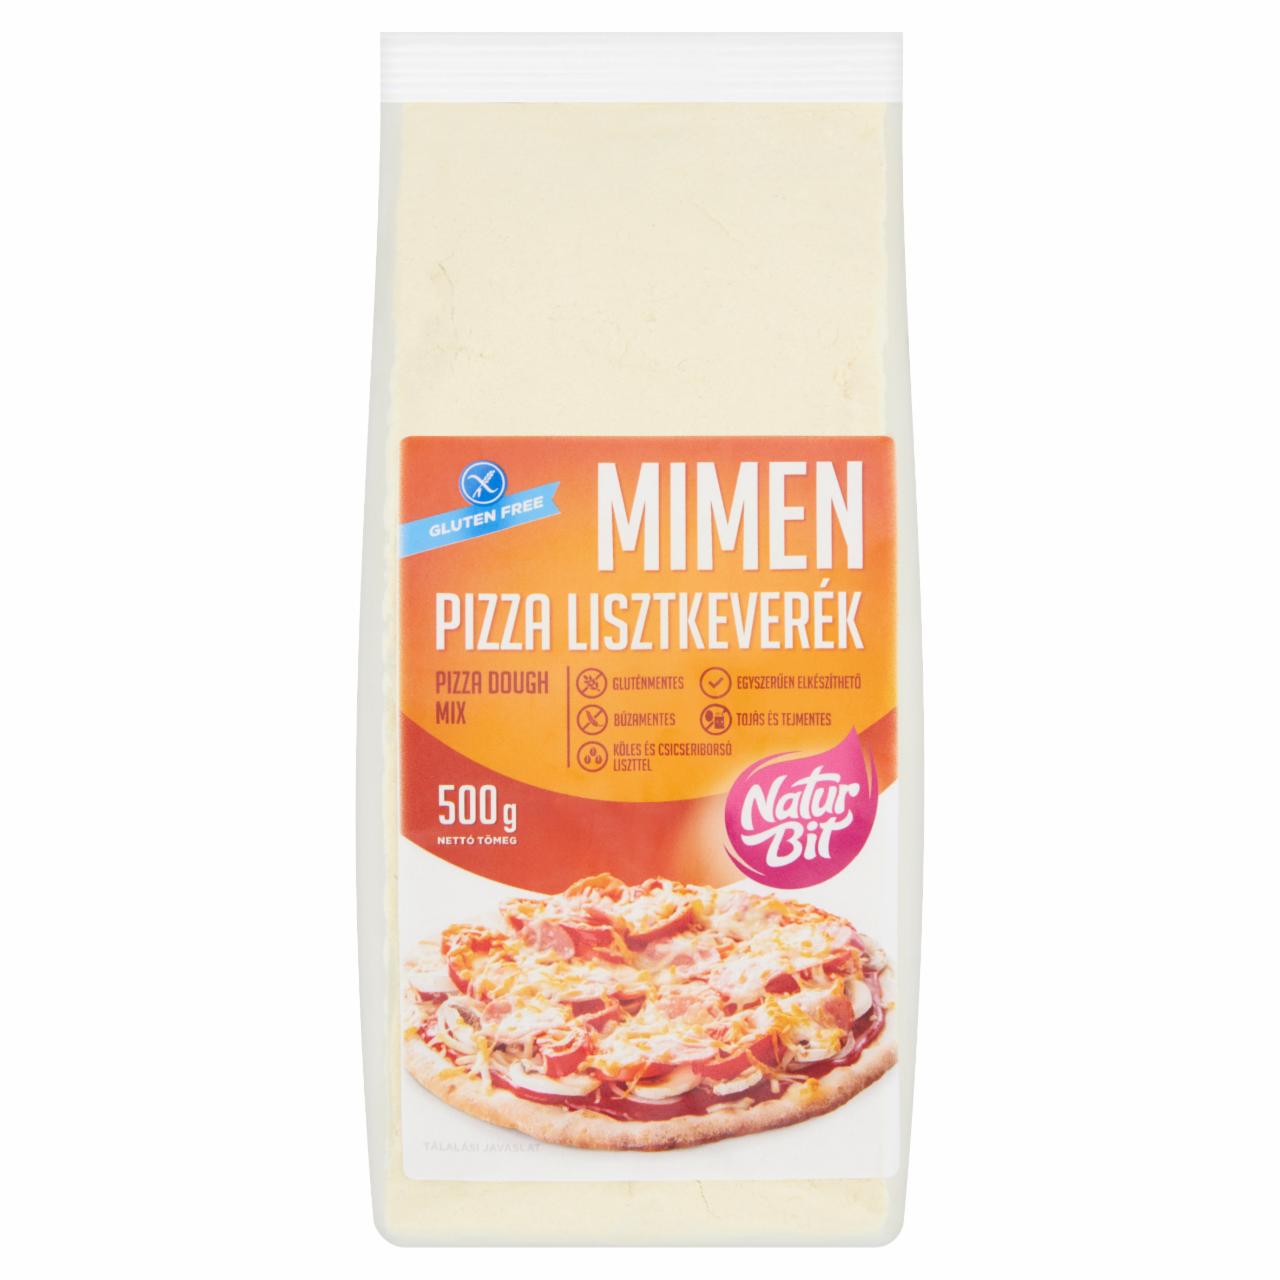 Képek - Naturbit Mimen pizza lisztkeverék 500 g